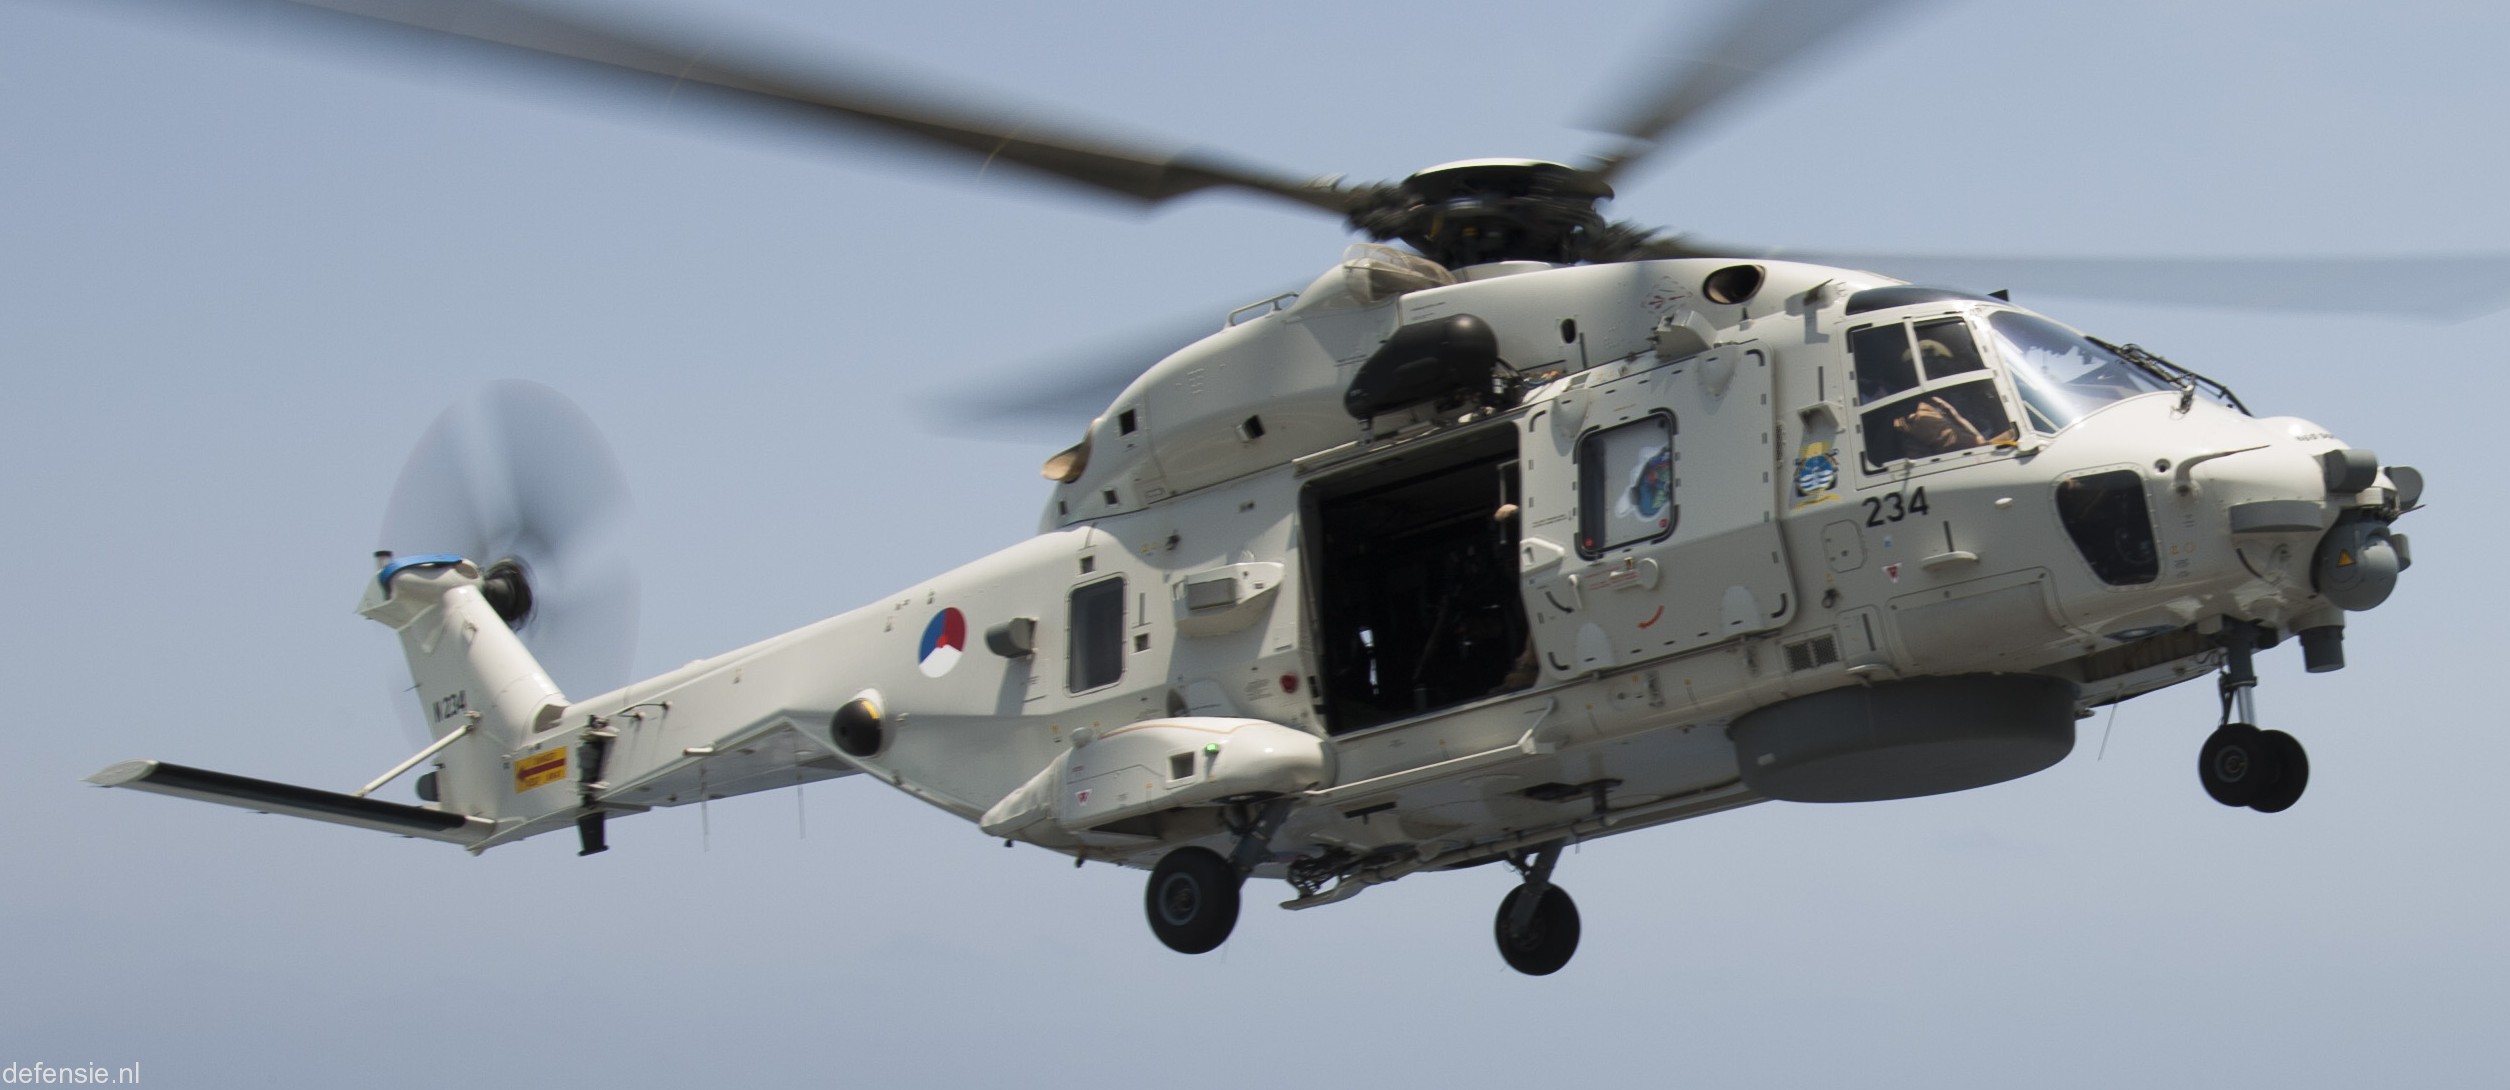 nh90 nfh helicopter royal netherlands navy koninklijke marine n-234 03